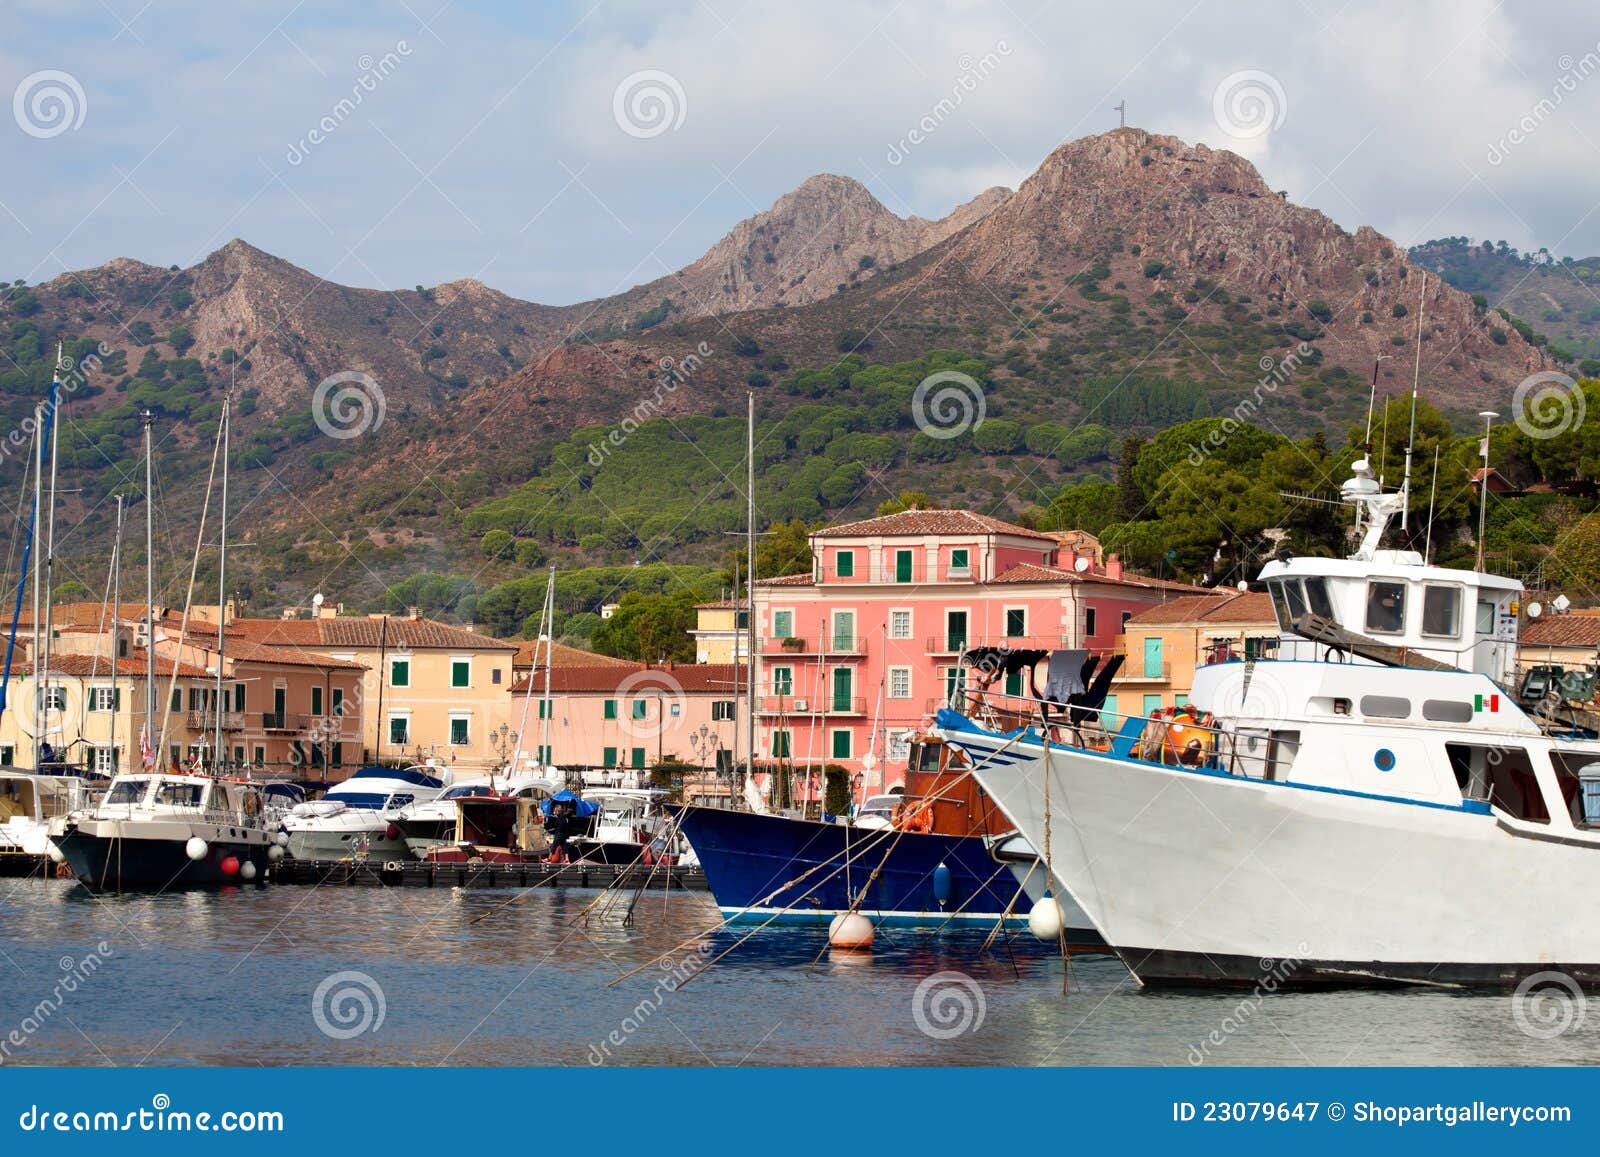 boats at porto azzurro, elba island, italy